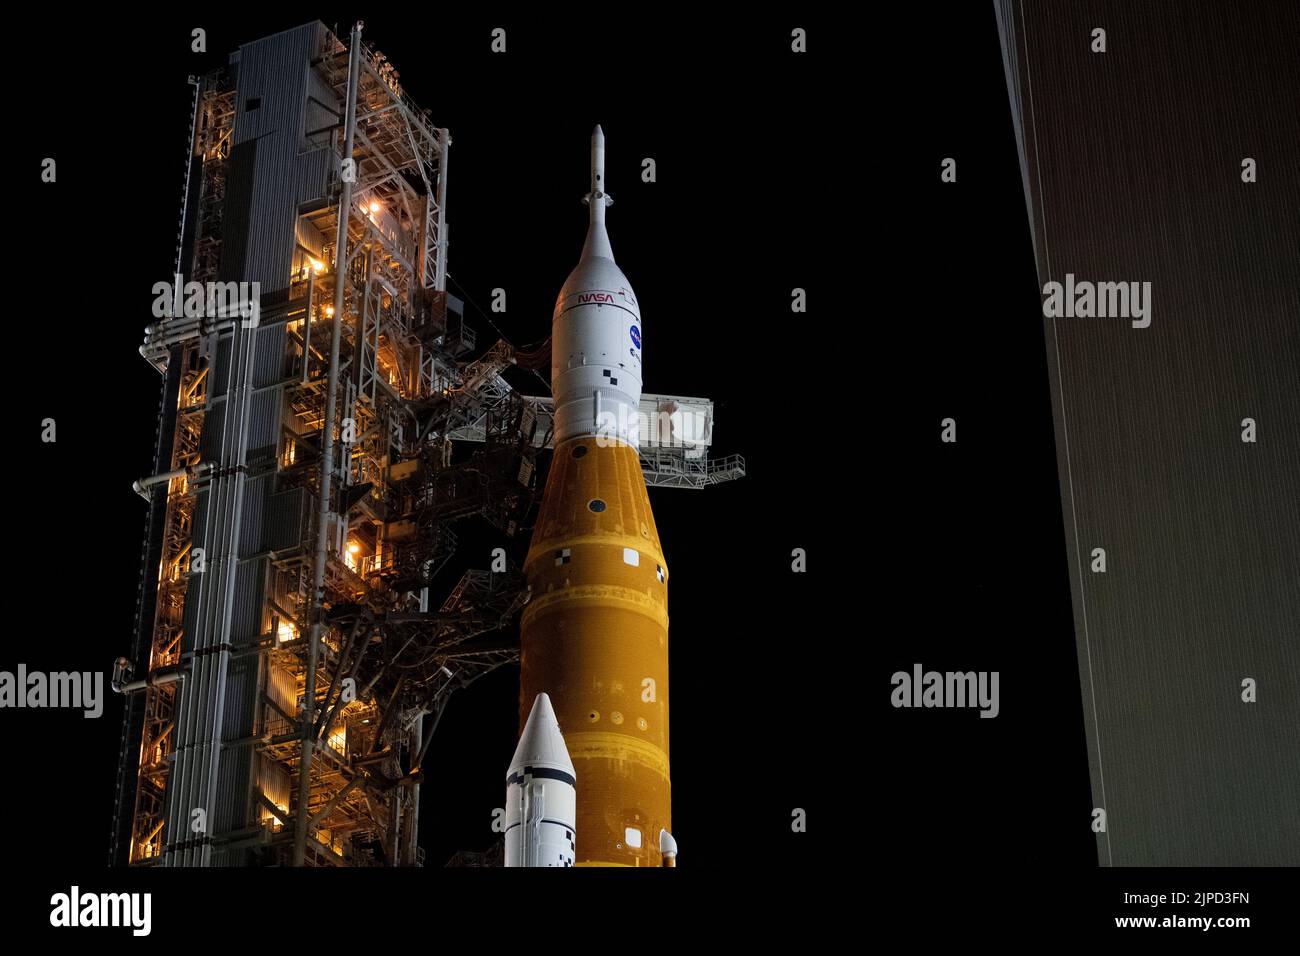 NASAs El cohete del Sistema de Lanzamiento Espacial (SLS) con la nave espacial Orion a bordo es visto encima de un lanzador móvil mientras el brazo de acceso de la tripulación es girado en posición para su lanzamiento a la plataforma de lanzamiento 39B, martes, 16 de agosto de 2022, en el Centro Espacial NASAs Kennedy en Florida. La misión Artemis I es la primera prueba integrada de los sistemas de exploración del espacio profundo agencys¿NASAs: La nave espacial Orion, el cohete SLS y los sistemas de apoyo en tierra. El lanzamiento de la prueba de vuelo sin tripulación está previsto para no antes del 29 de agosto de 2022. Crédito obligatorio: Joel Kowsky/NASA vía CNP Foto de stock